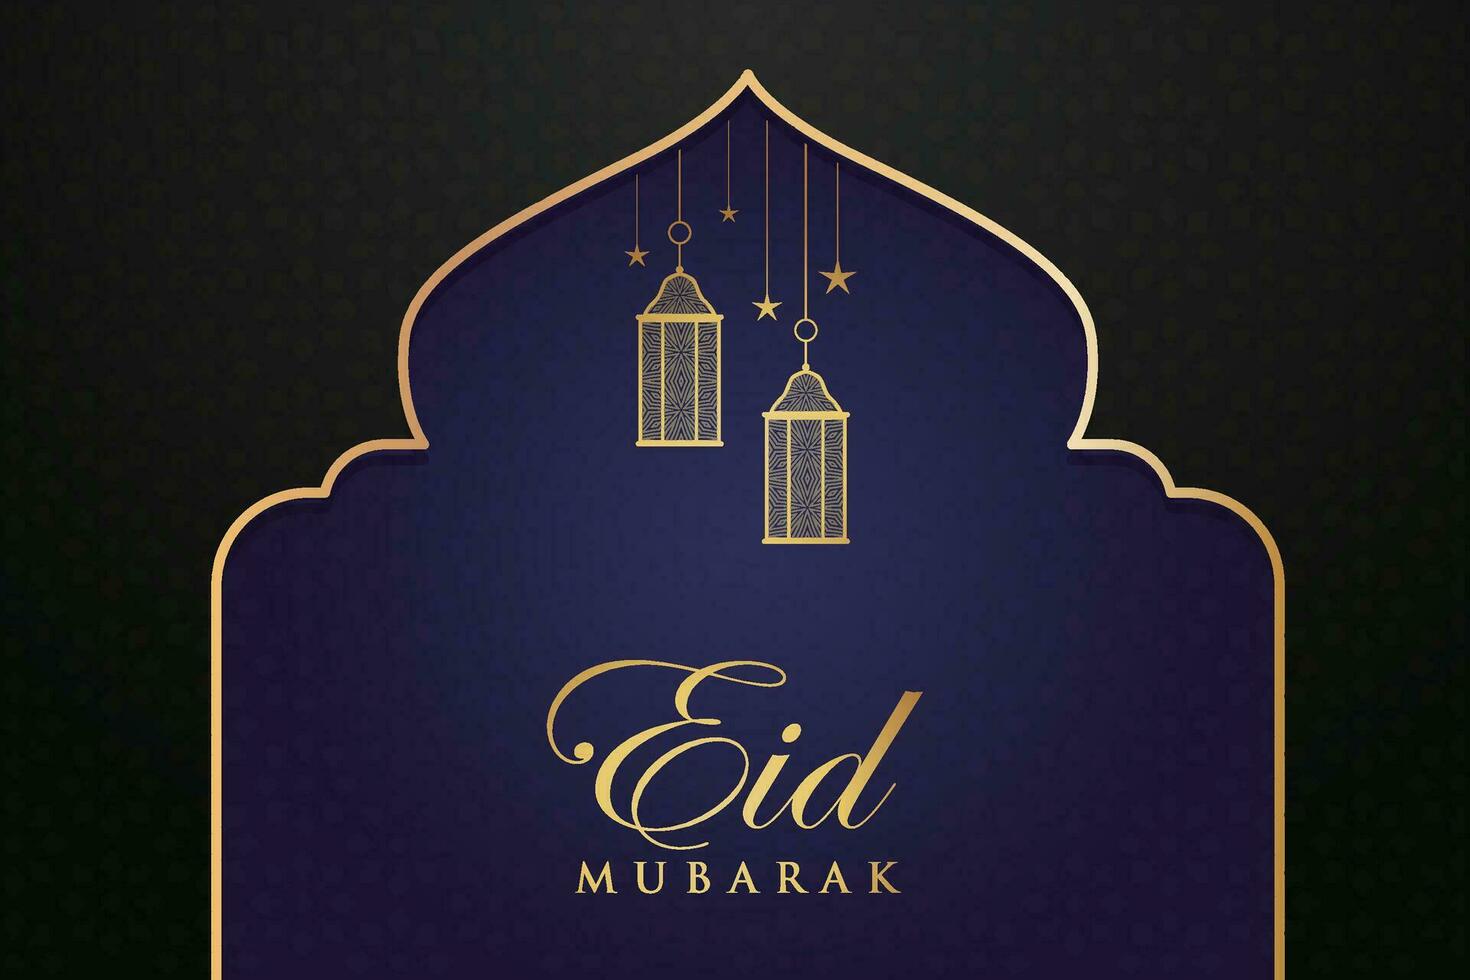 Ramadan eid mubarak salutation carte avec mosquée silhouette gratuit vecteur illustration